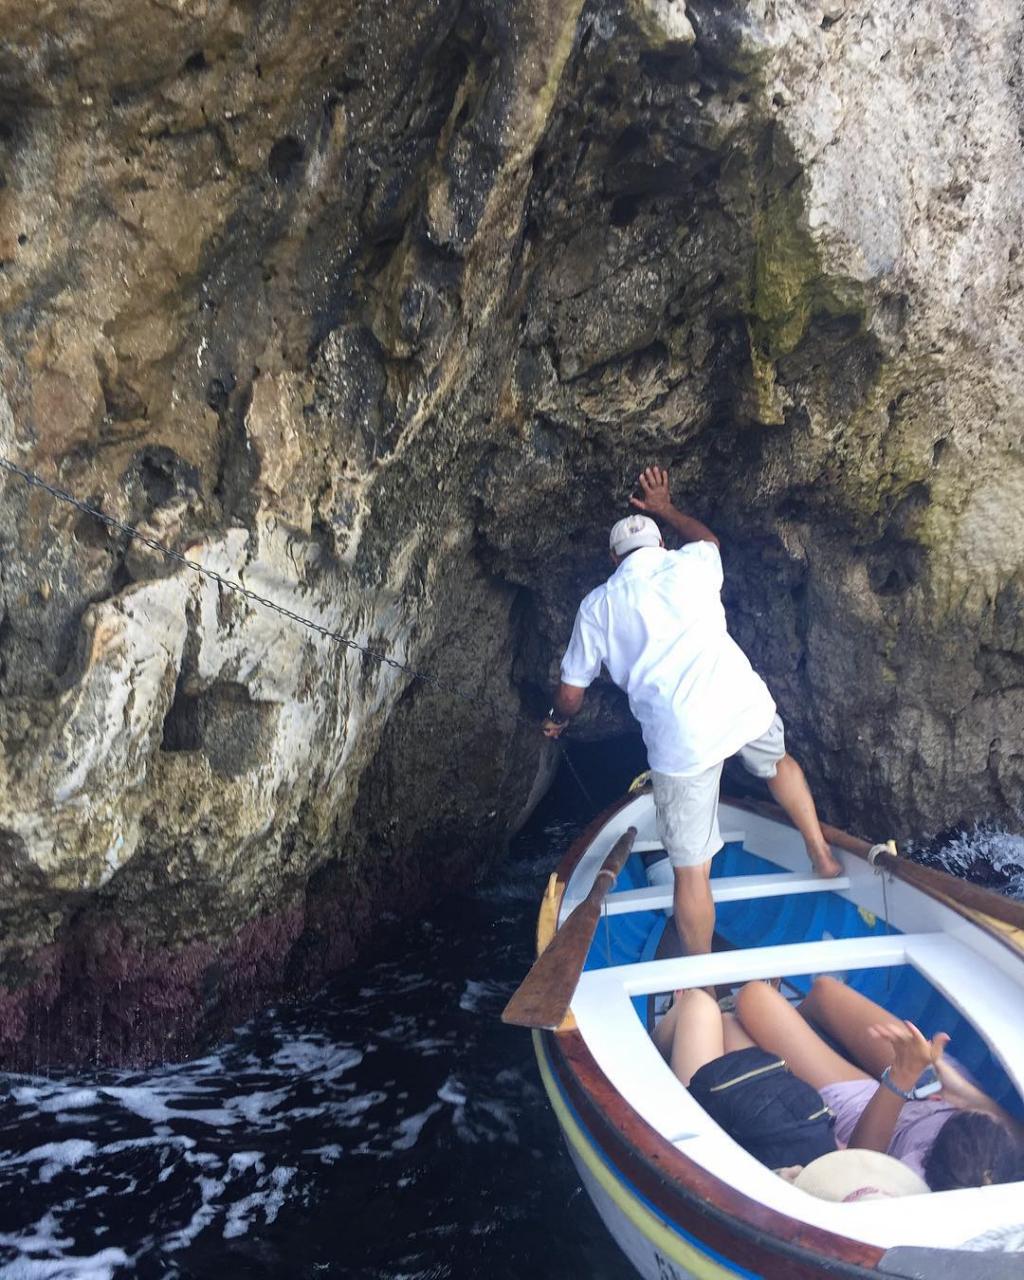 意大利卡布里島 坐船仔進洞賞藍洞絕景